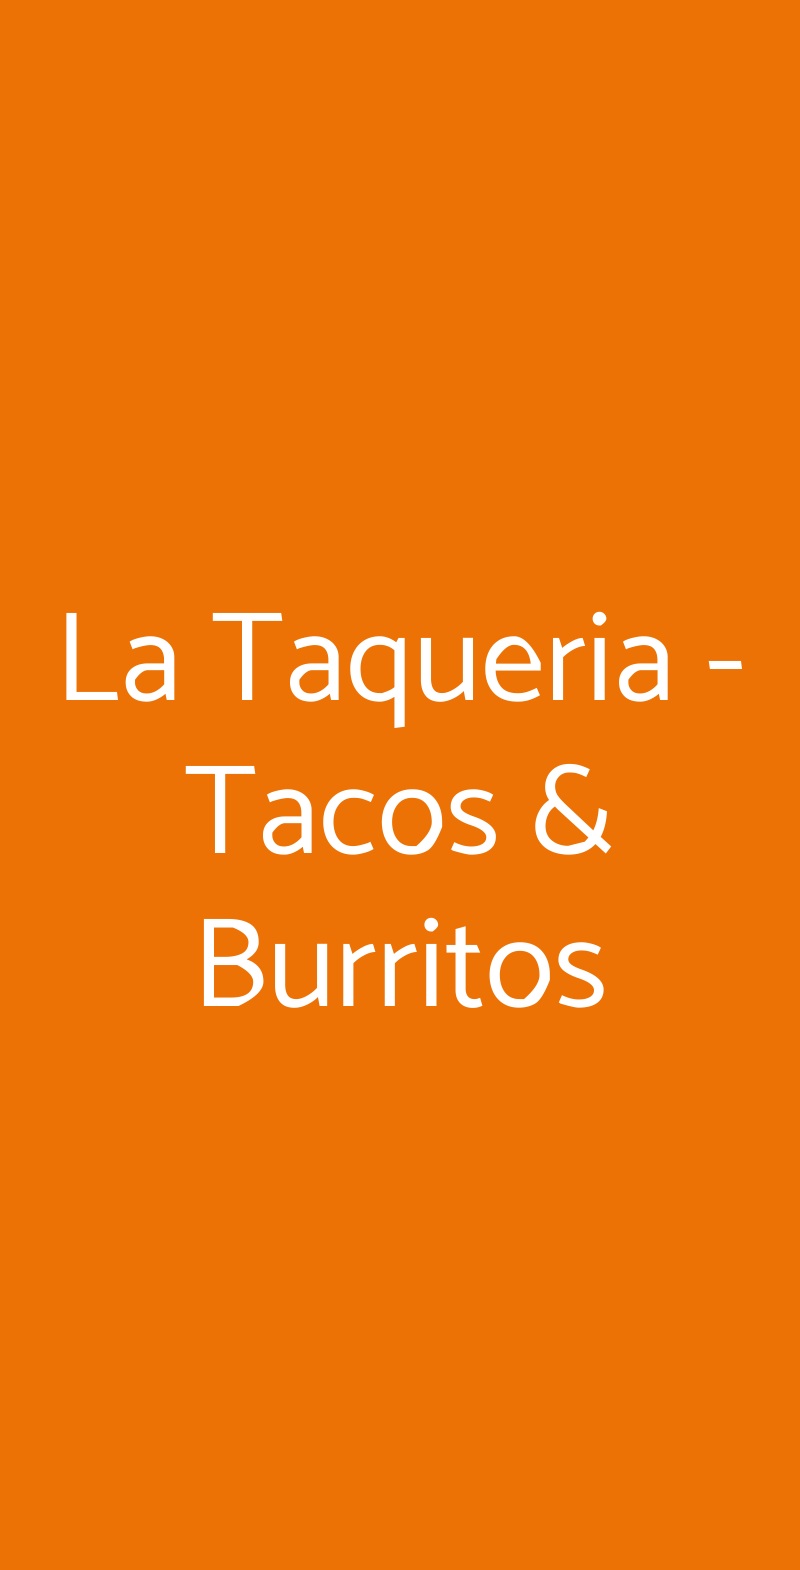 La Taqueria - Tacos & Burritos Roma menù 1 pagina